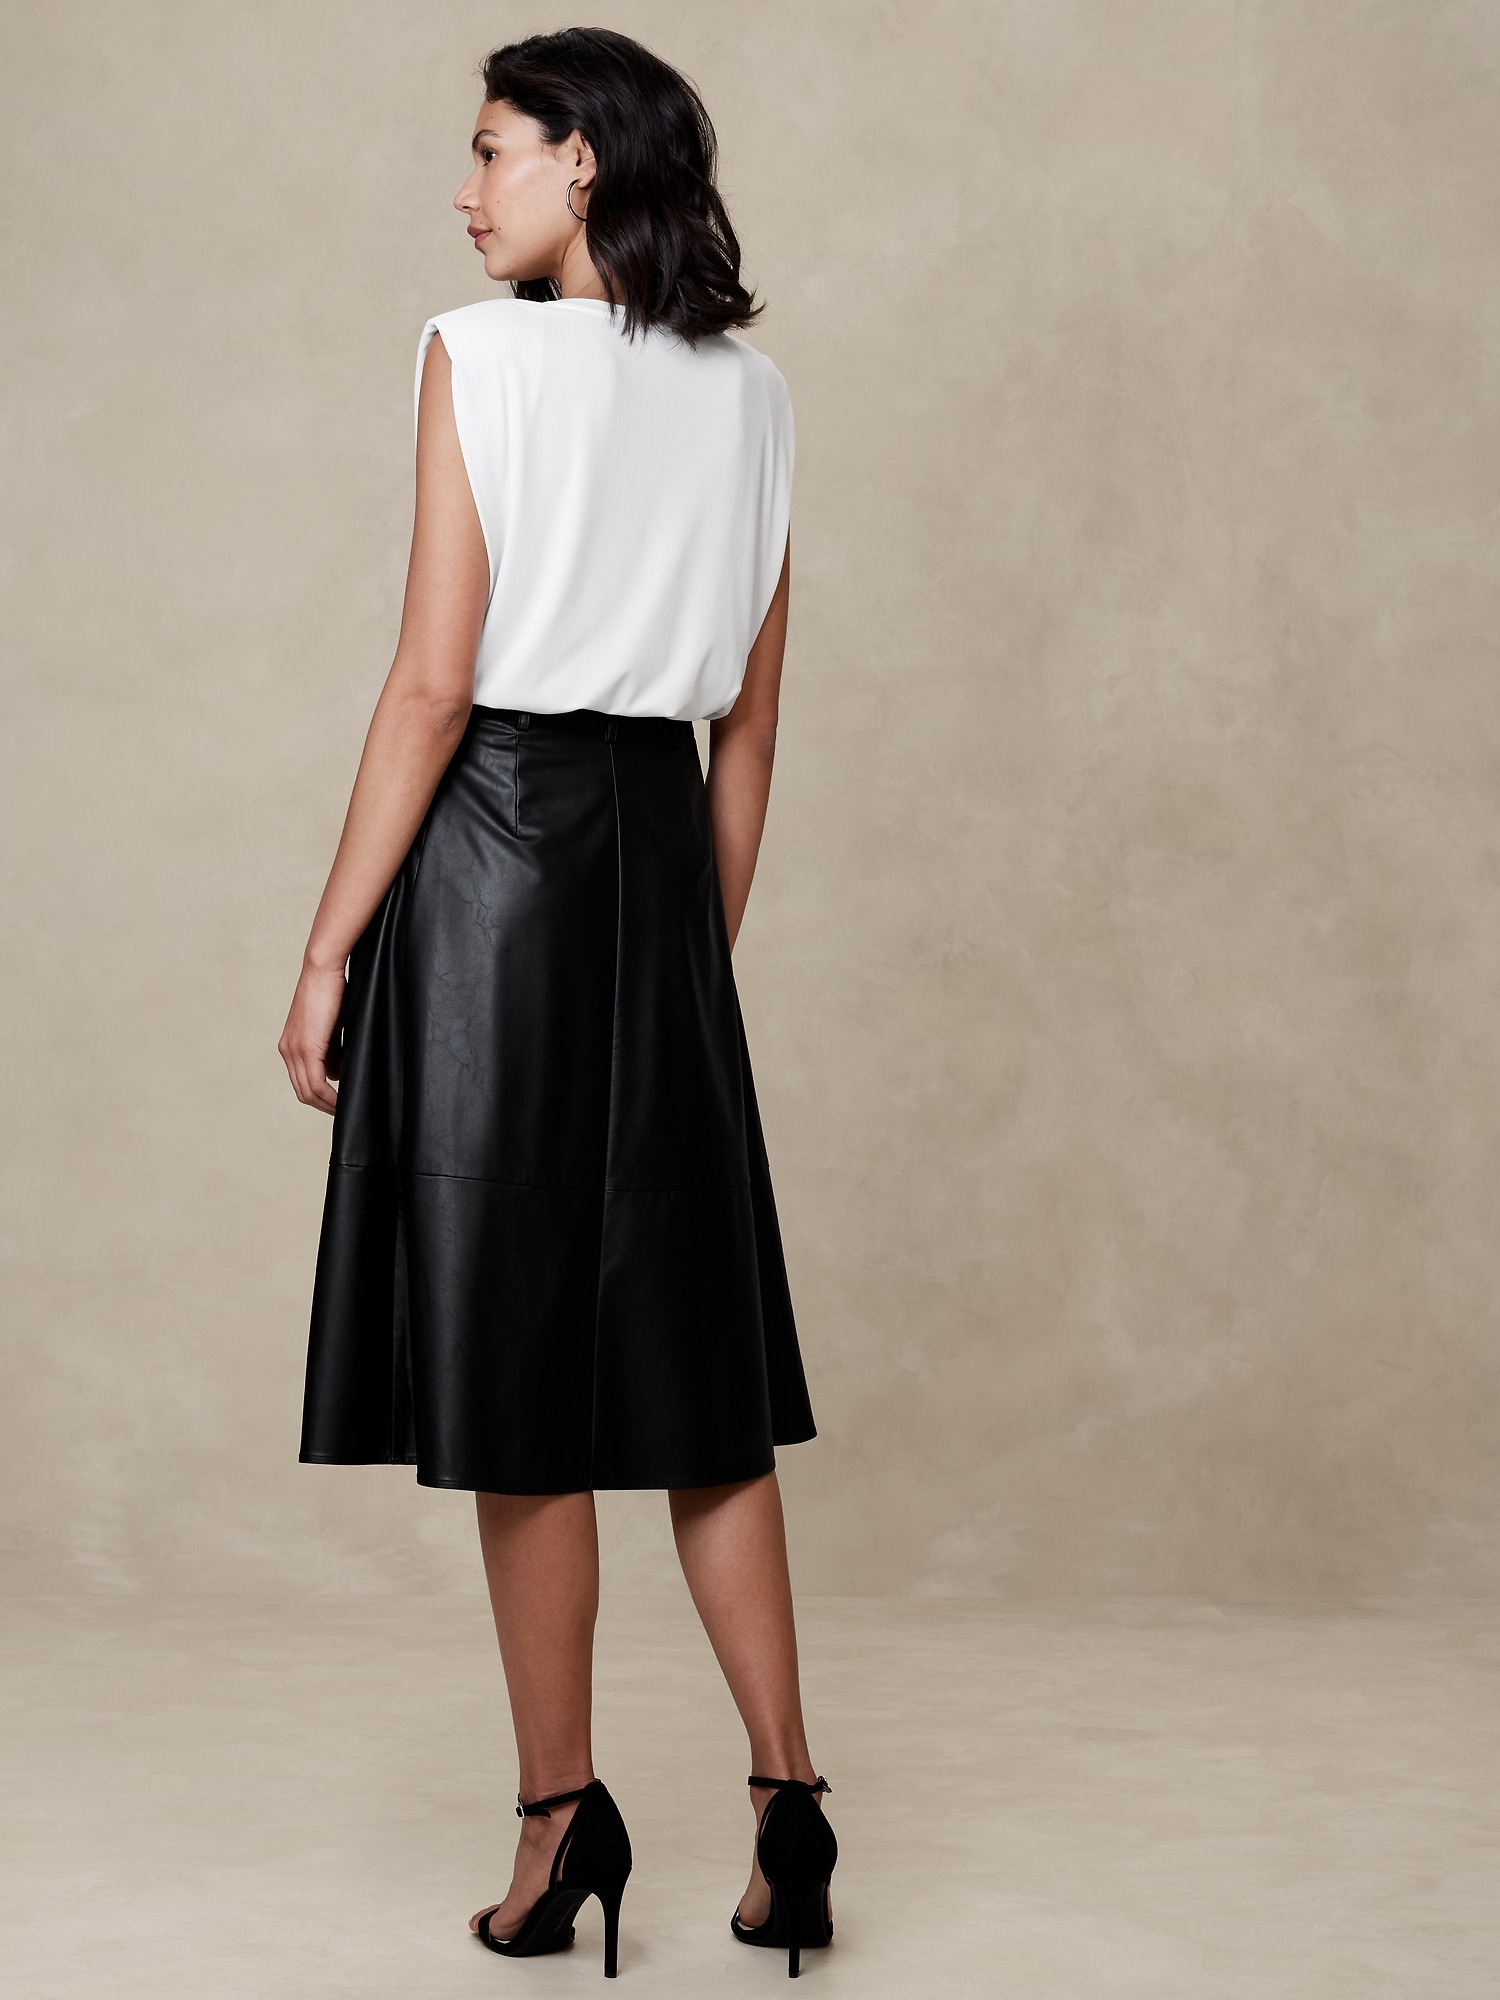 Leather Midi Skirt